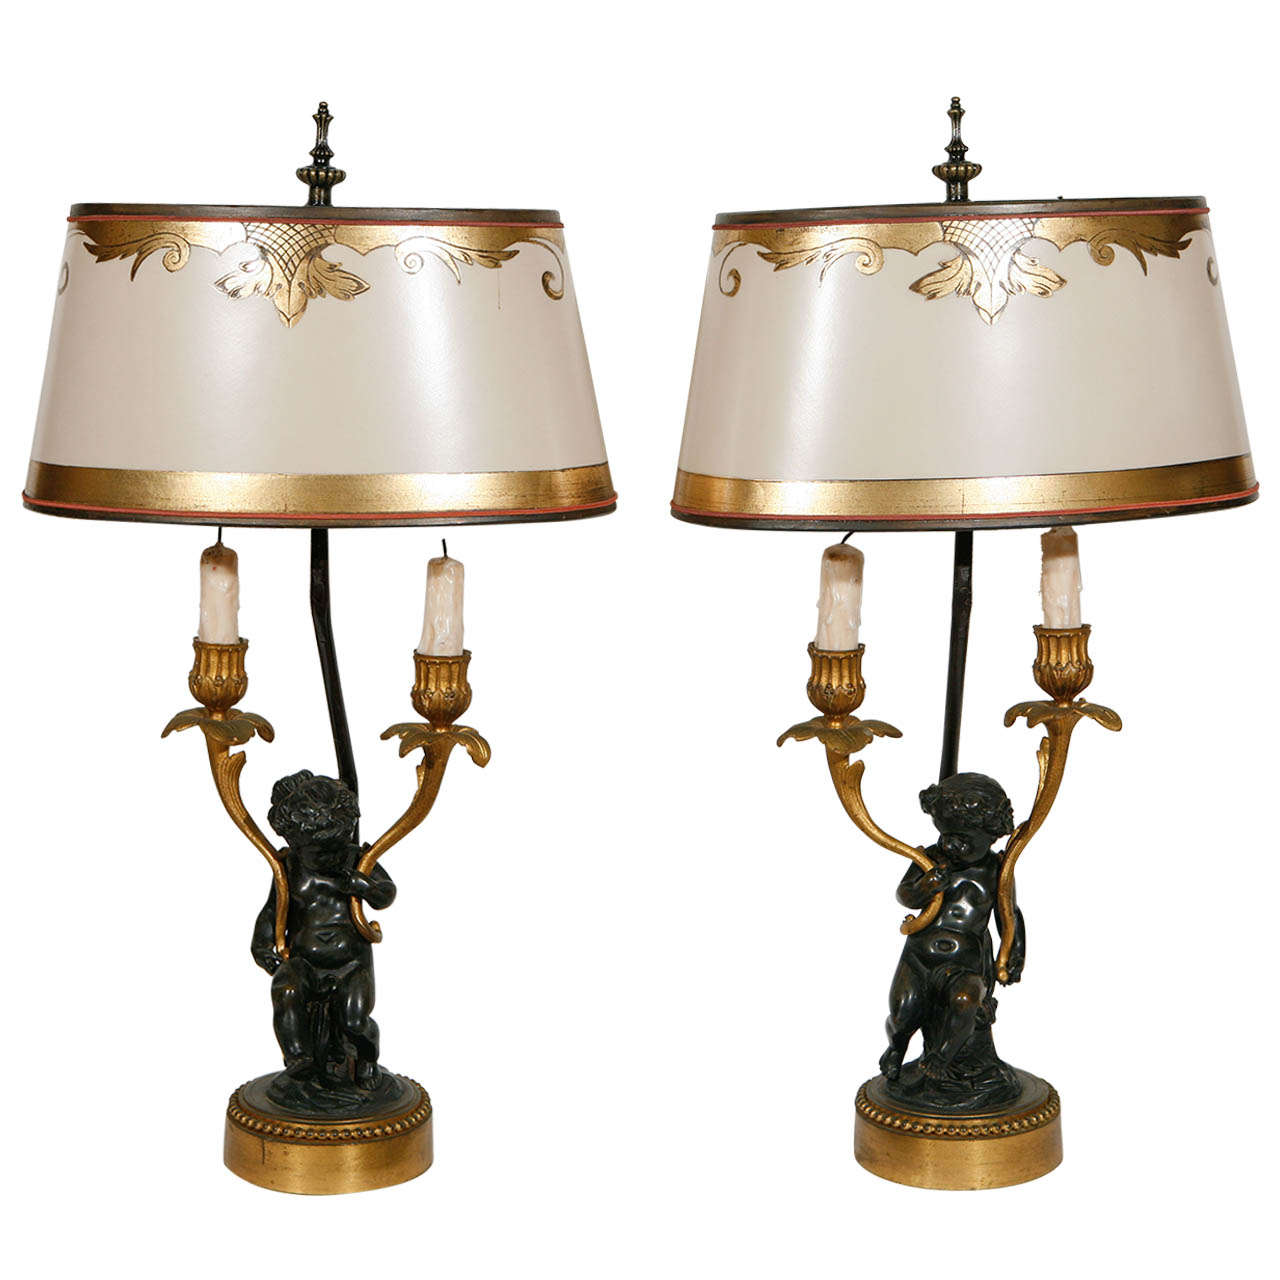 Paire de candélabres à deux bras en bronze français du 19ème siècle transformés en lampes